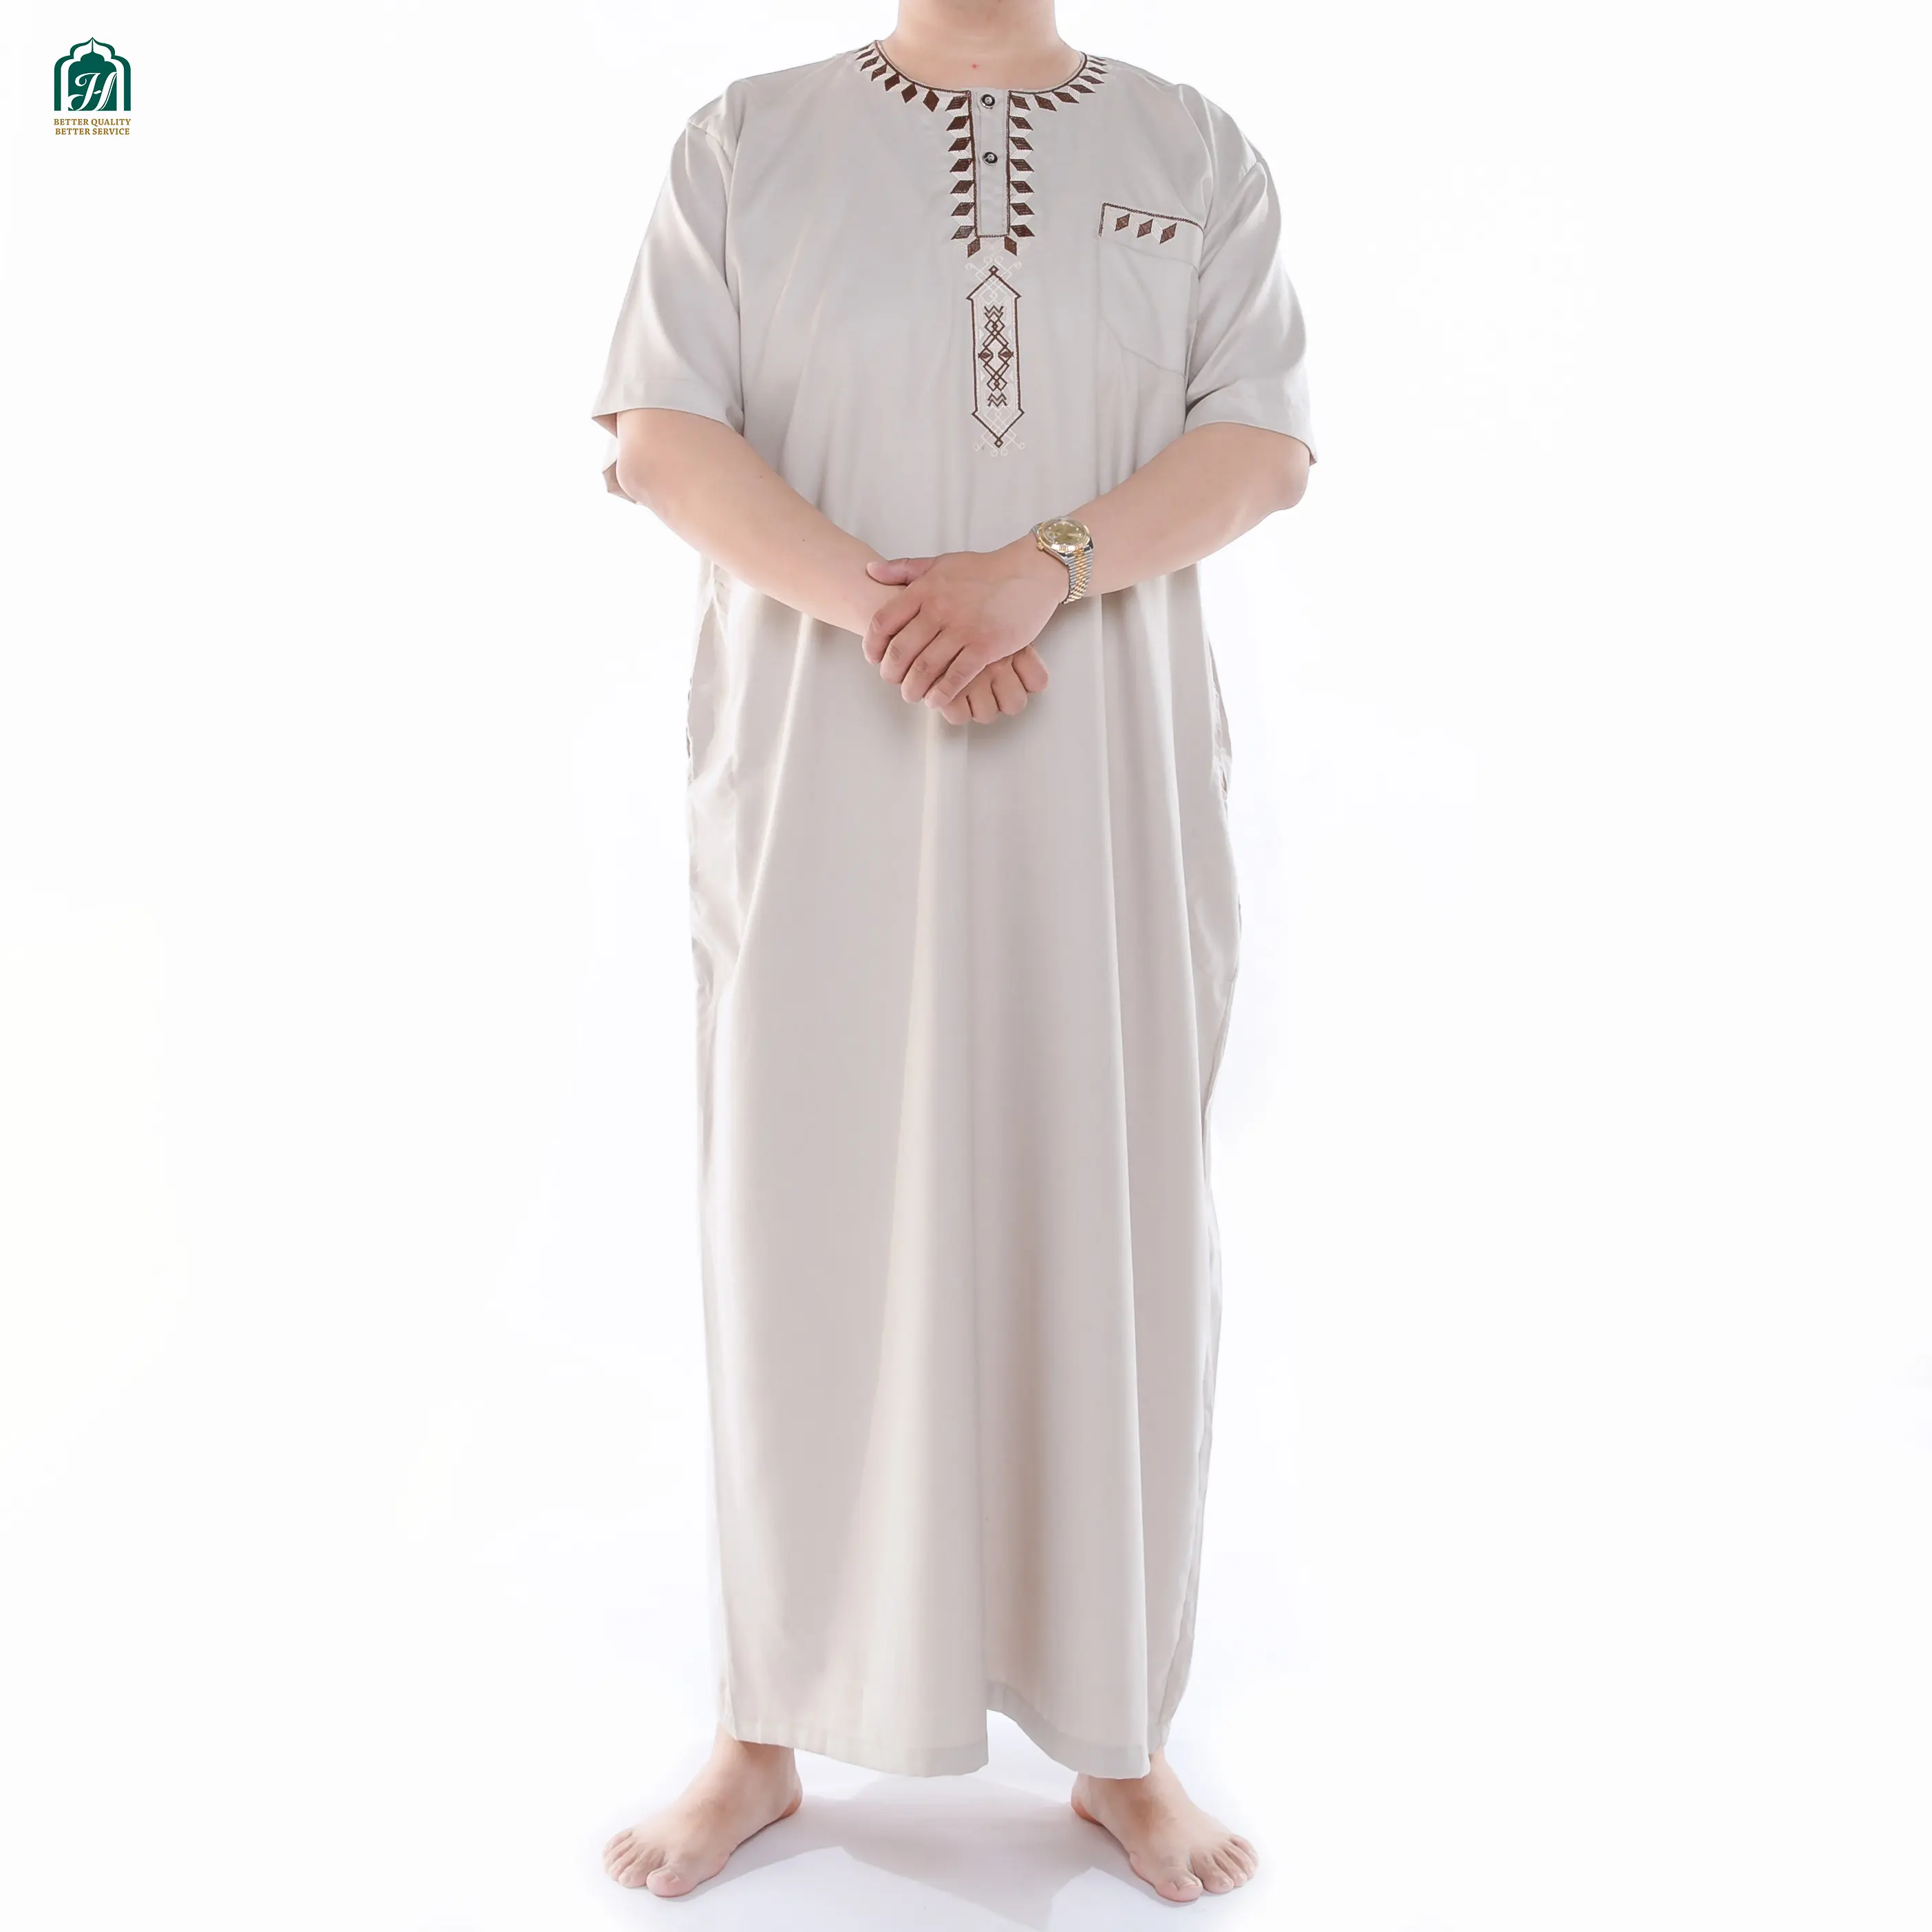 Jubba erkekler müslüman Thobe elbiseler müslüman elbise umman suudi arabistan İslam kıyafetler arap İslami giyim umman elbise